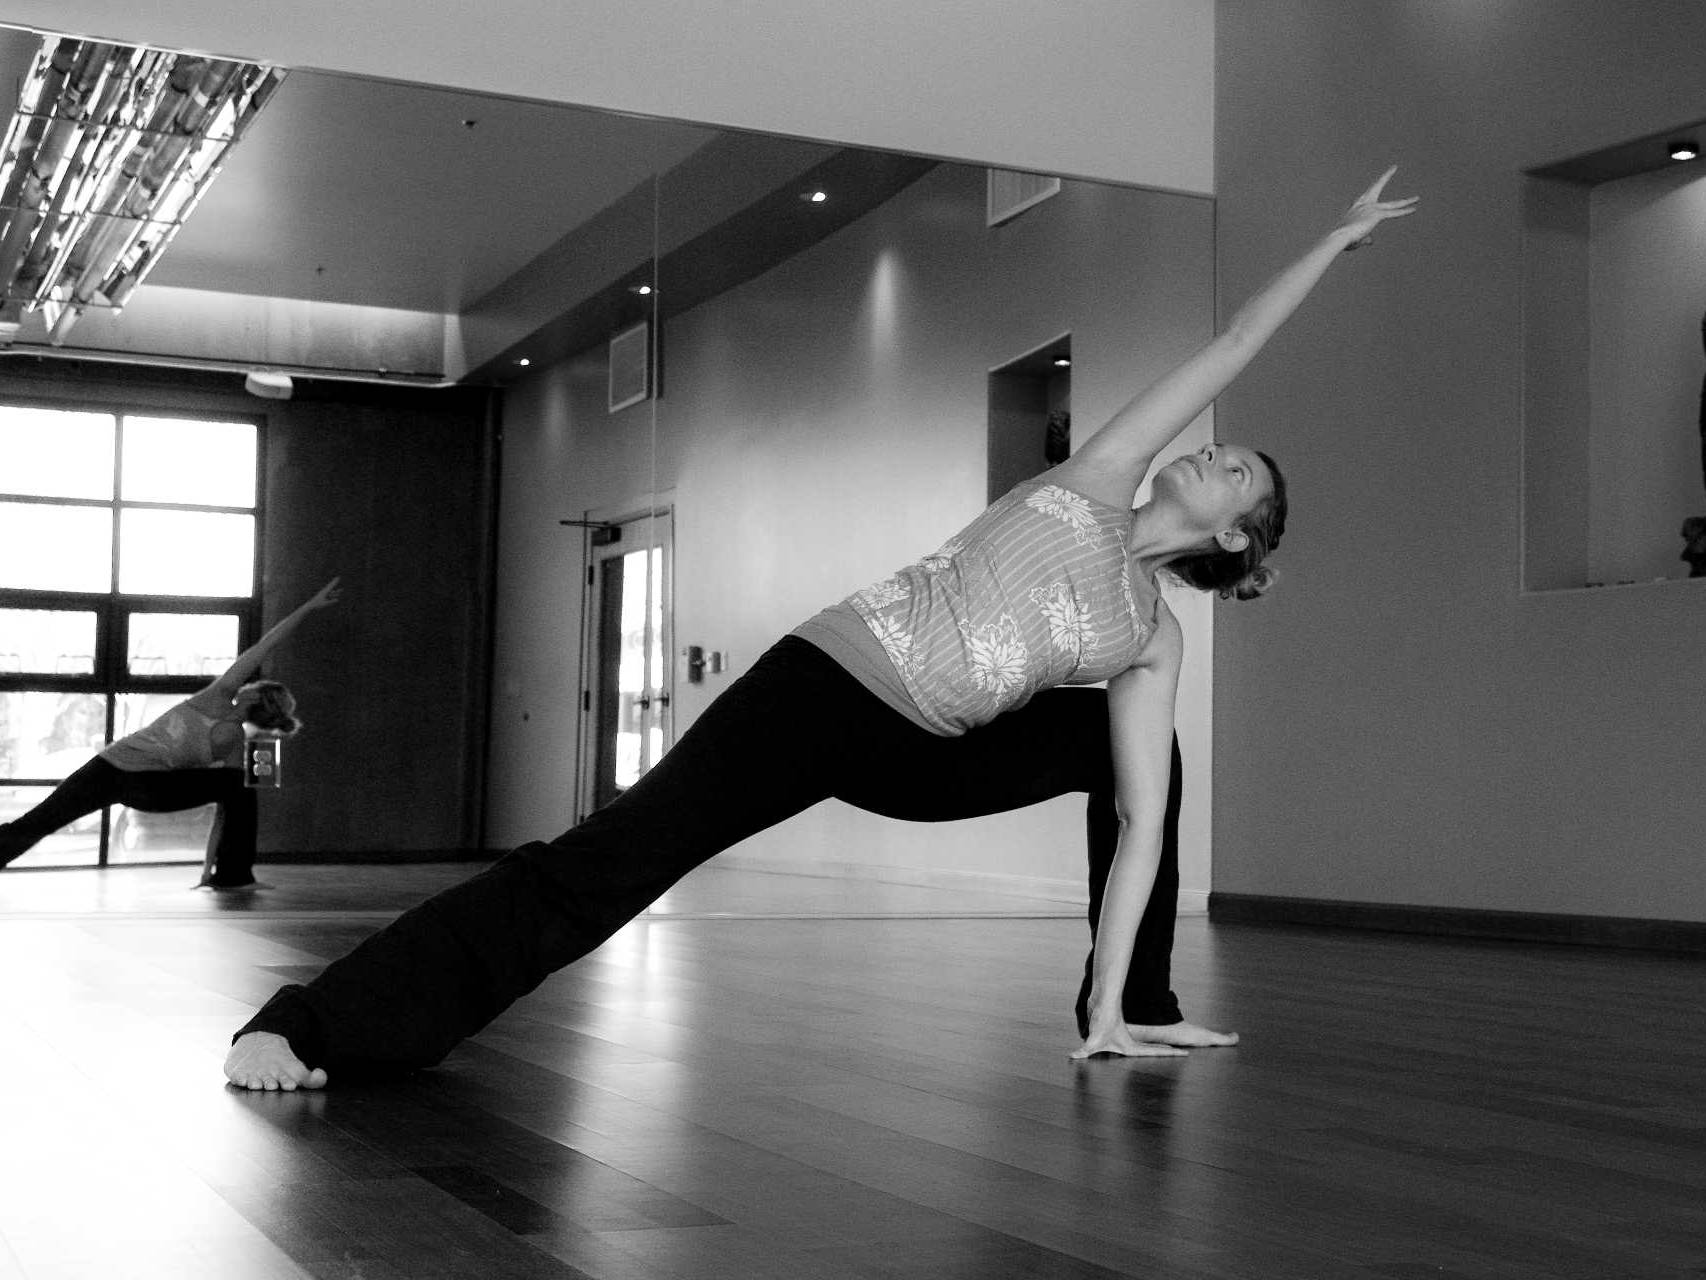 hot Yoga studio practice room with woman striking yoga posing